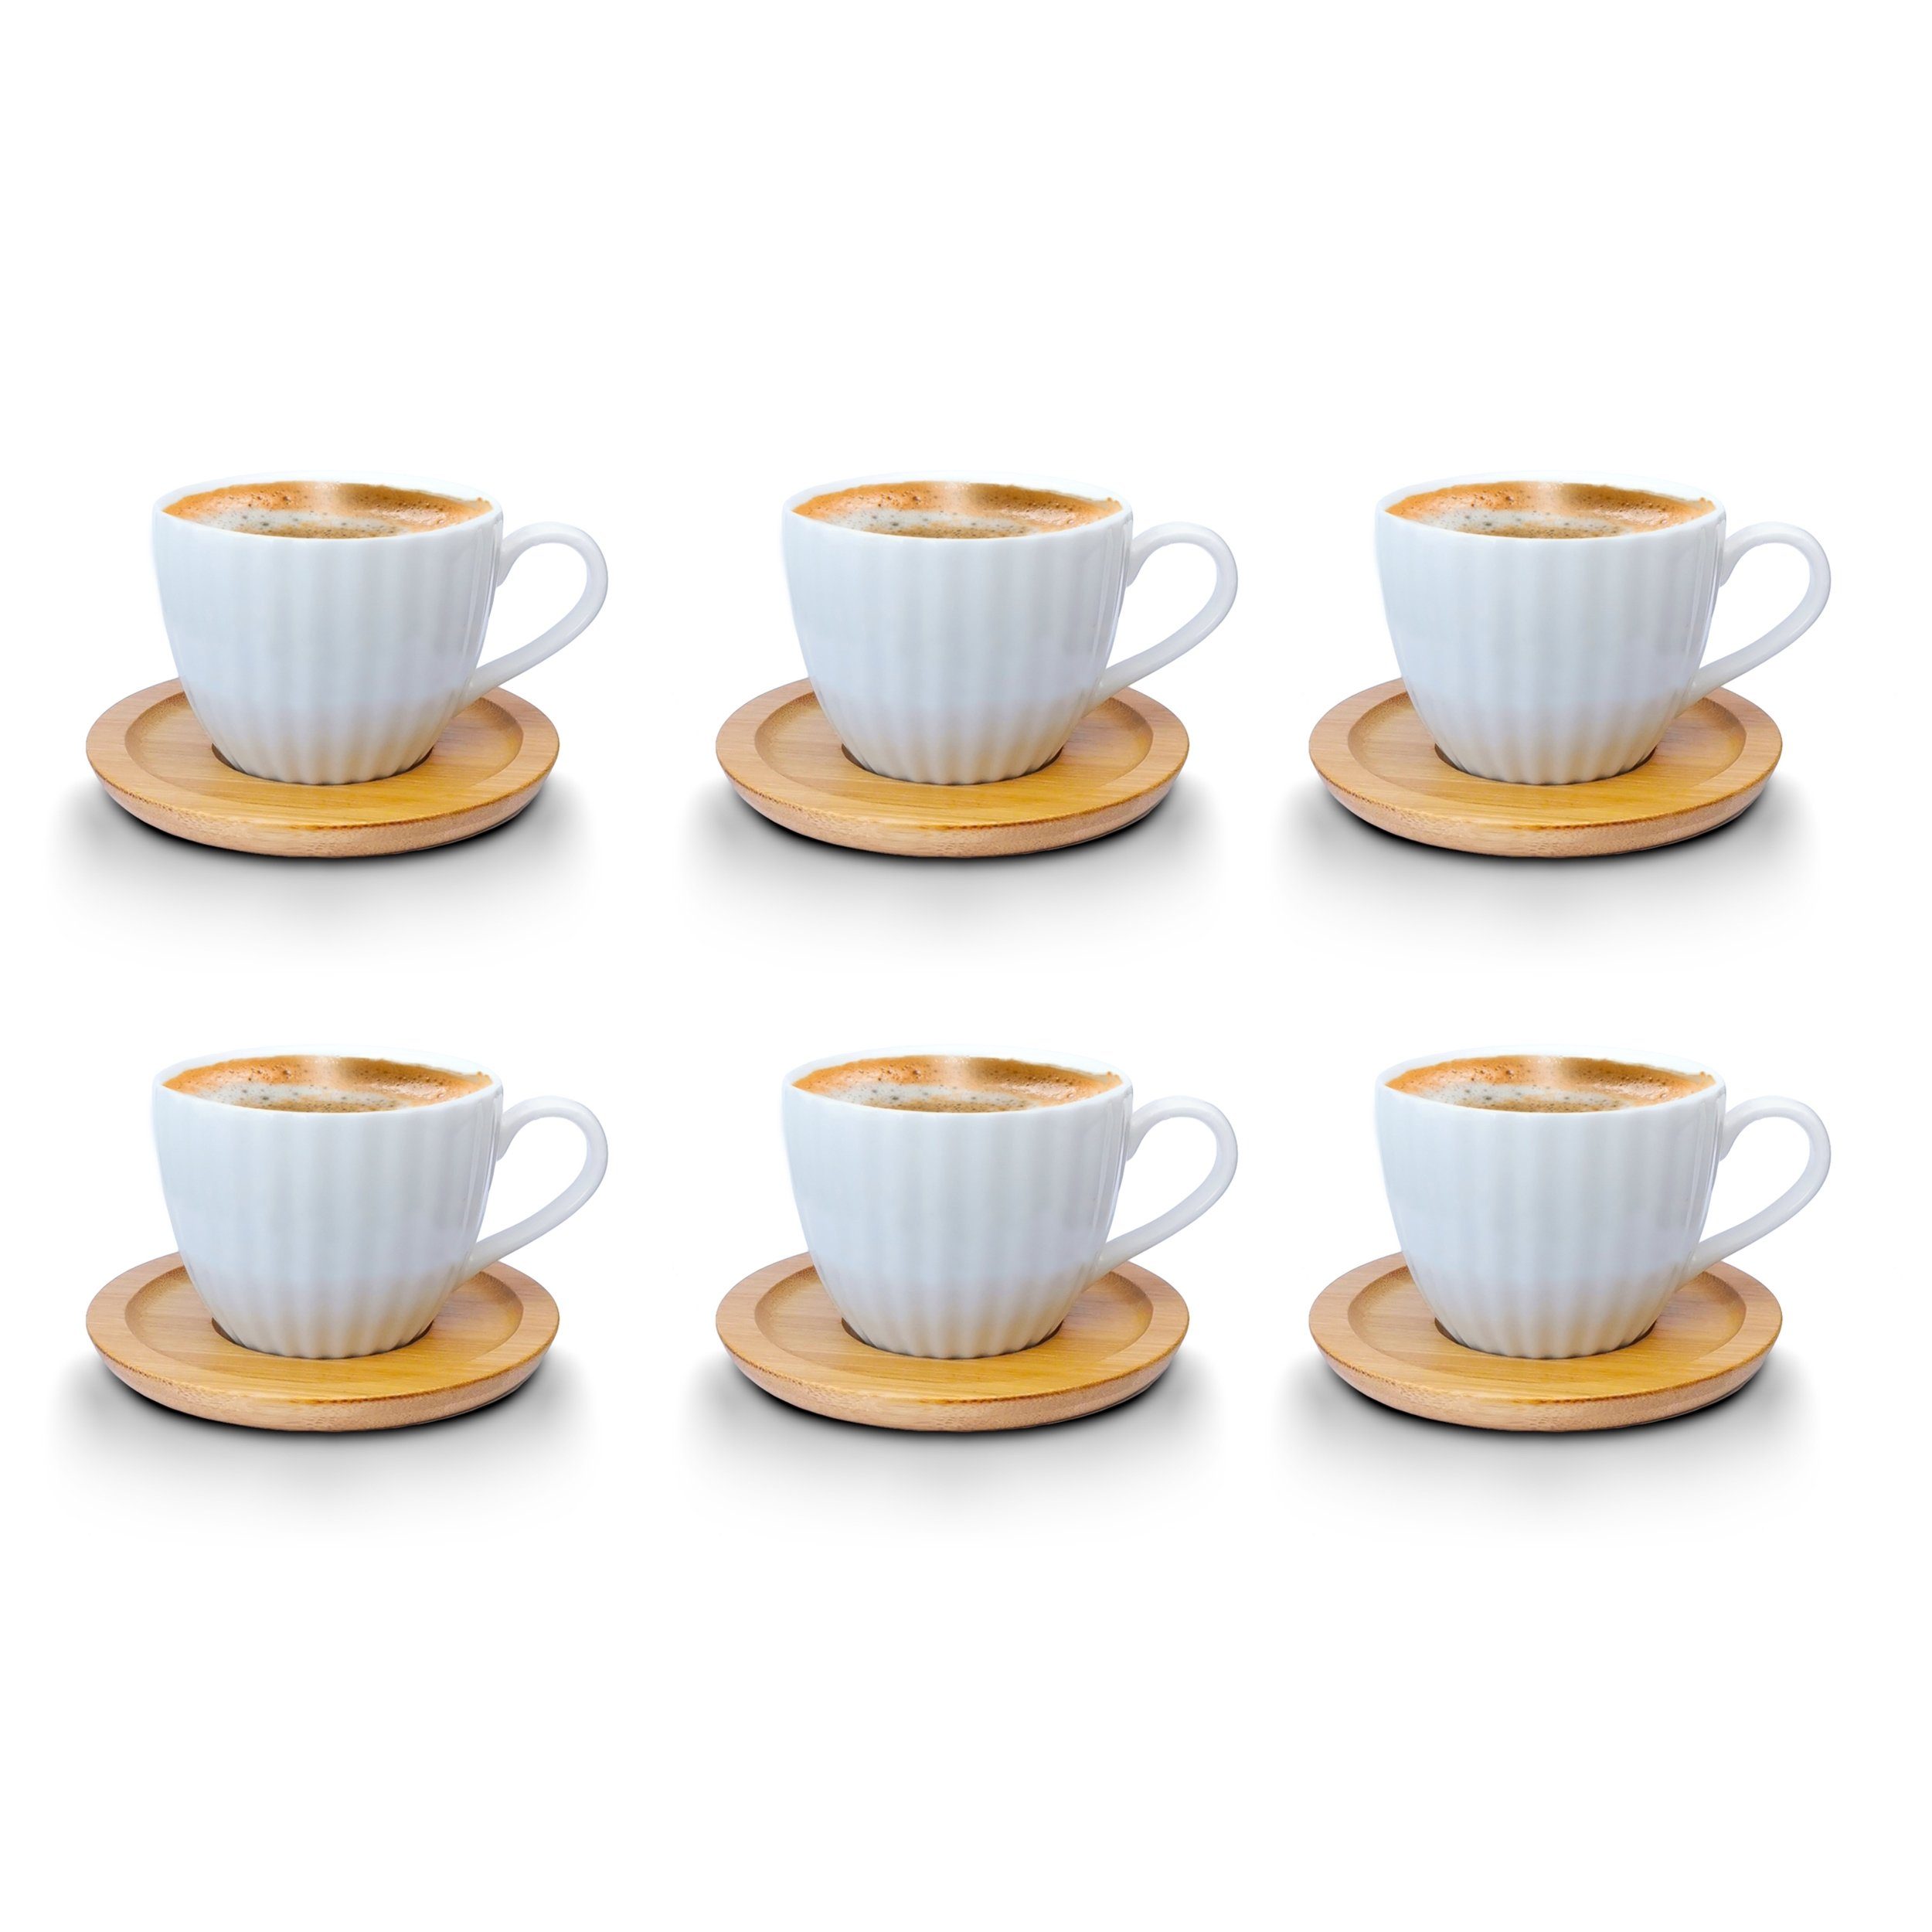 Fiora Kaffeeservice Kaffeetassen Espressotassen Cappuccinotassen mit untersetzer Porzellan 6 Чашки + 6 Untersetzer Holz Optik Weisse Kaffeetassen Set (12-tlg), 6 Personen, Porzellan, Kaffeeservice 12 Teilig für 6 Personen